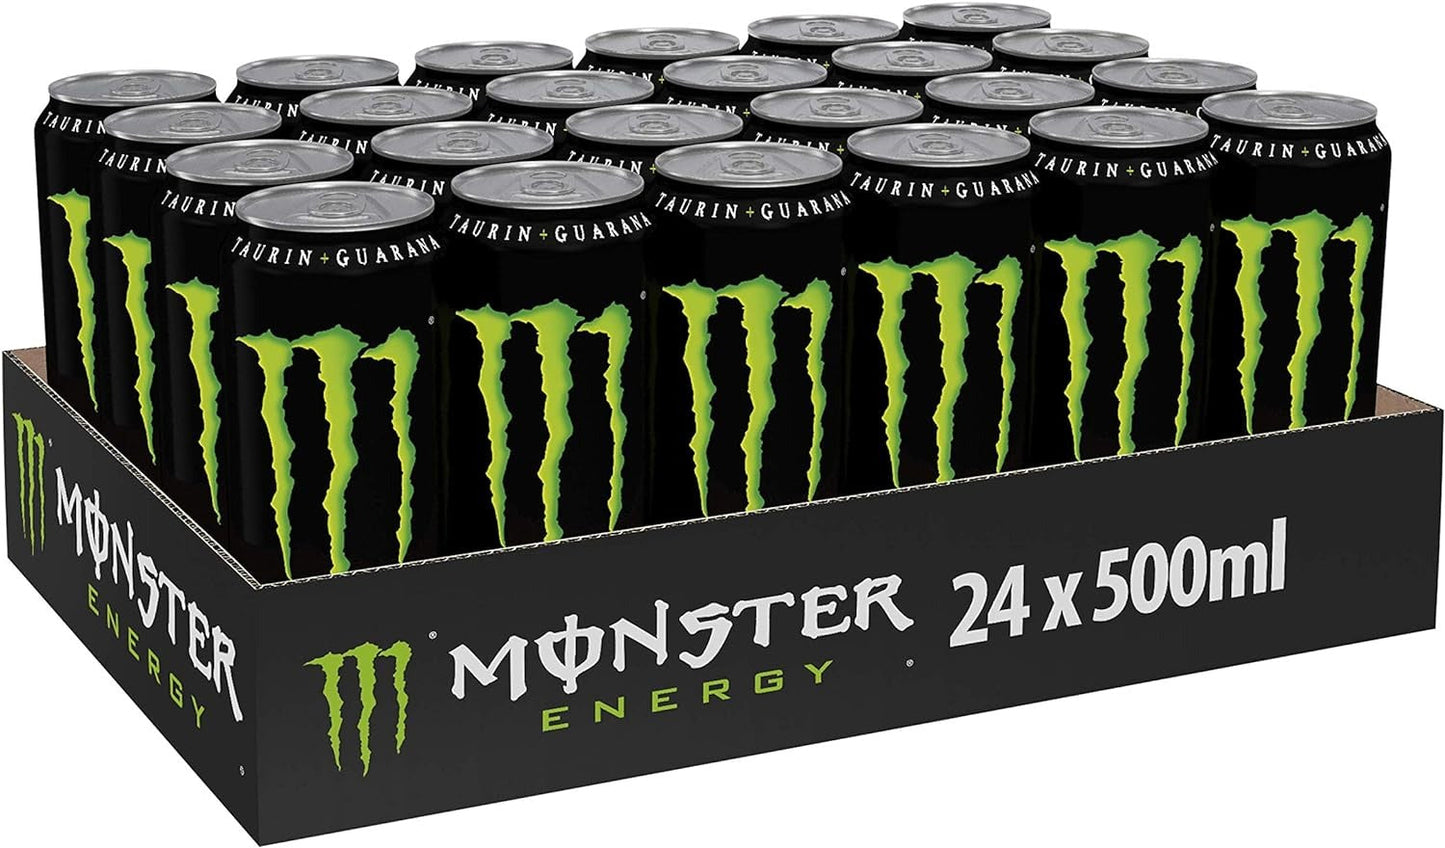 Monster energy | 500 ml, Pack de 24